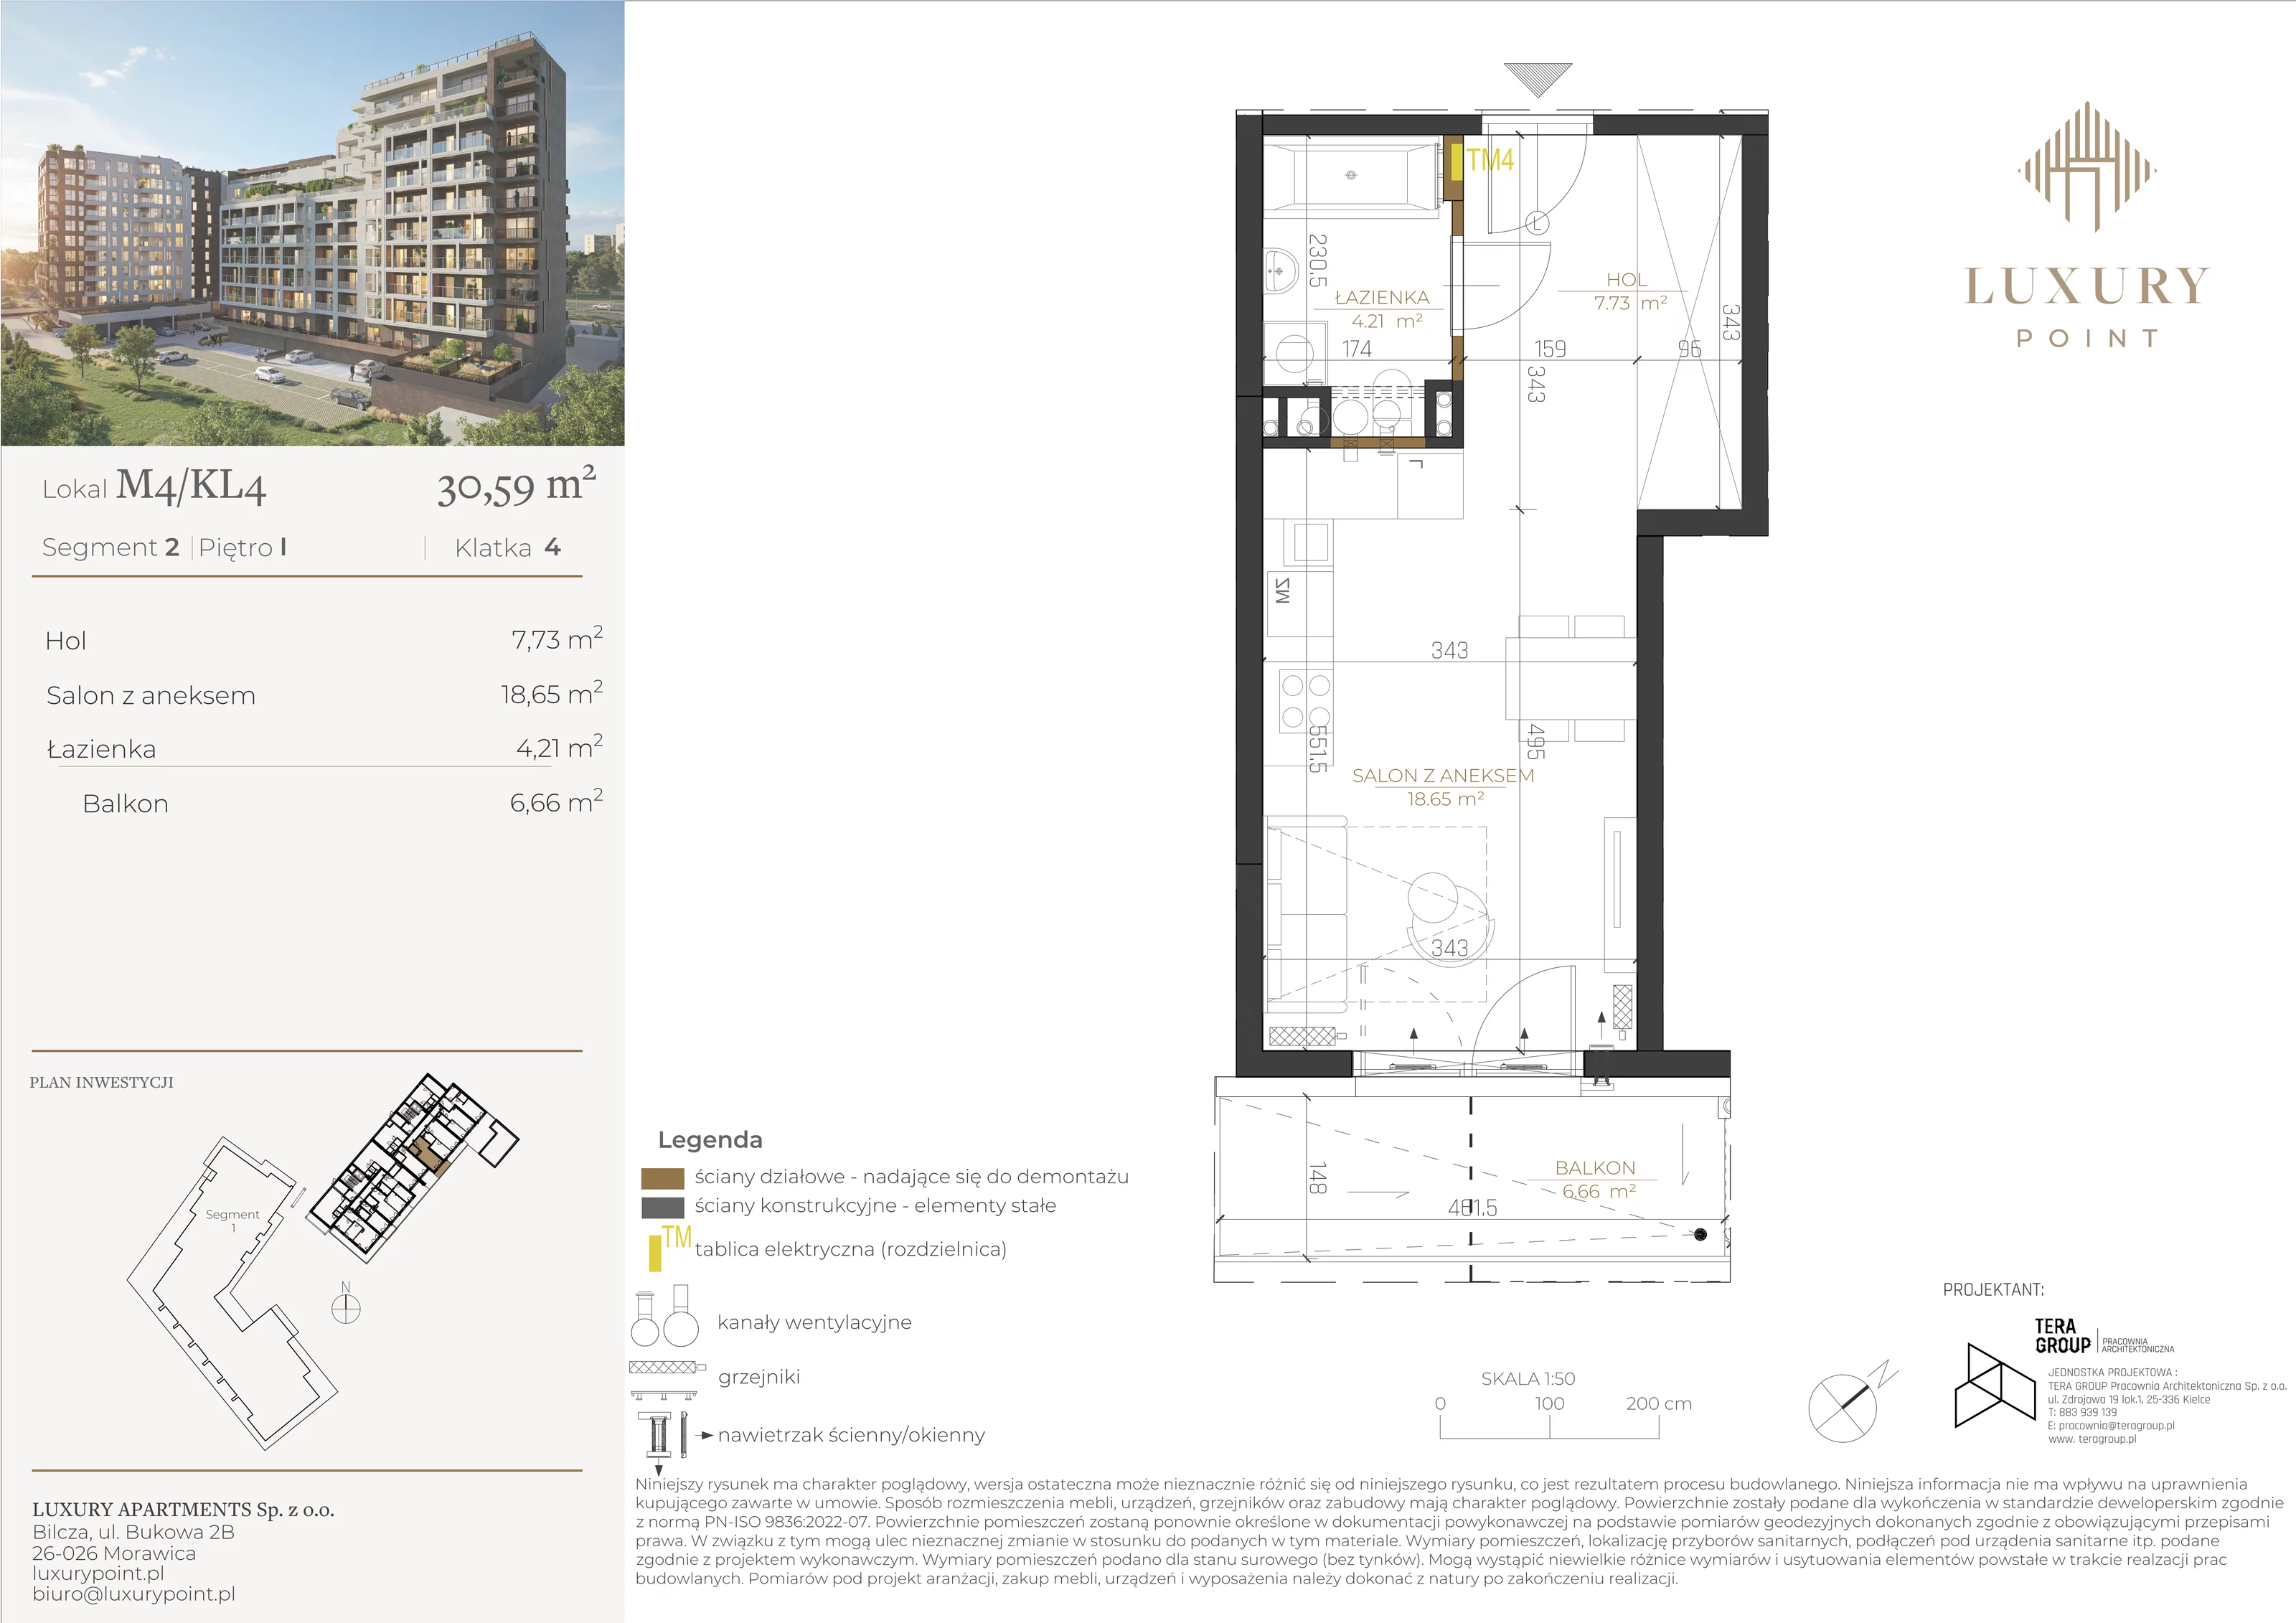 Mieszkanie 30,59 m², piętro 1, oferta nr M4/KL4, Luxury Point, Kielce, Al. Solidarności